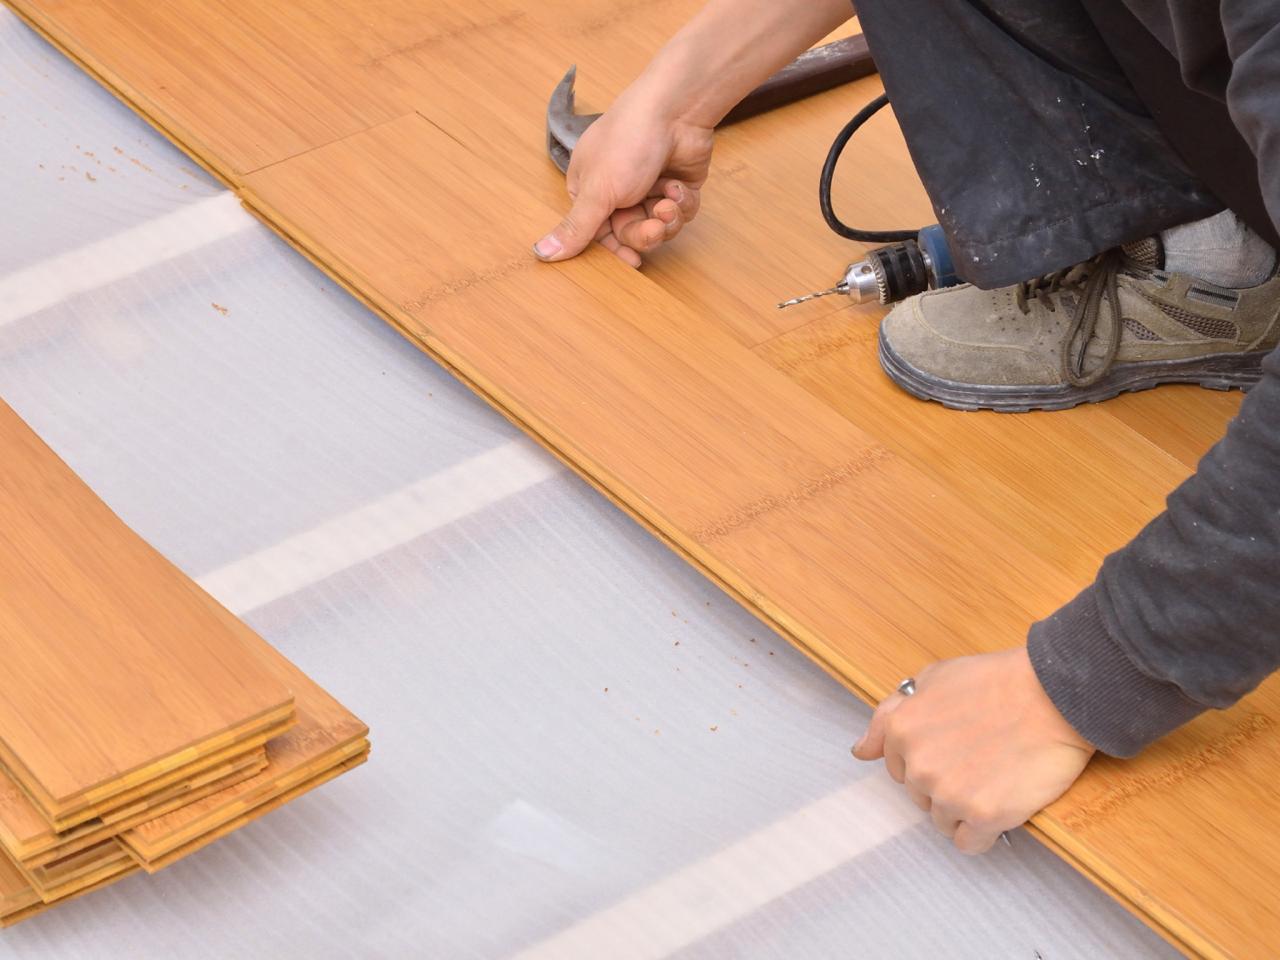 Bamboo Floor Installation Diy, Cost Of Bamboo Flooring Vs Laminate Flooring